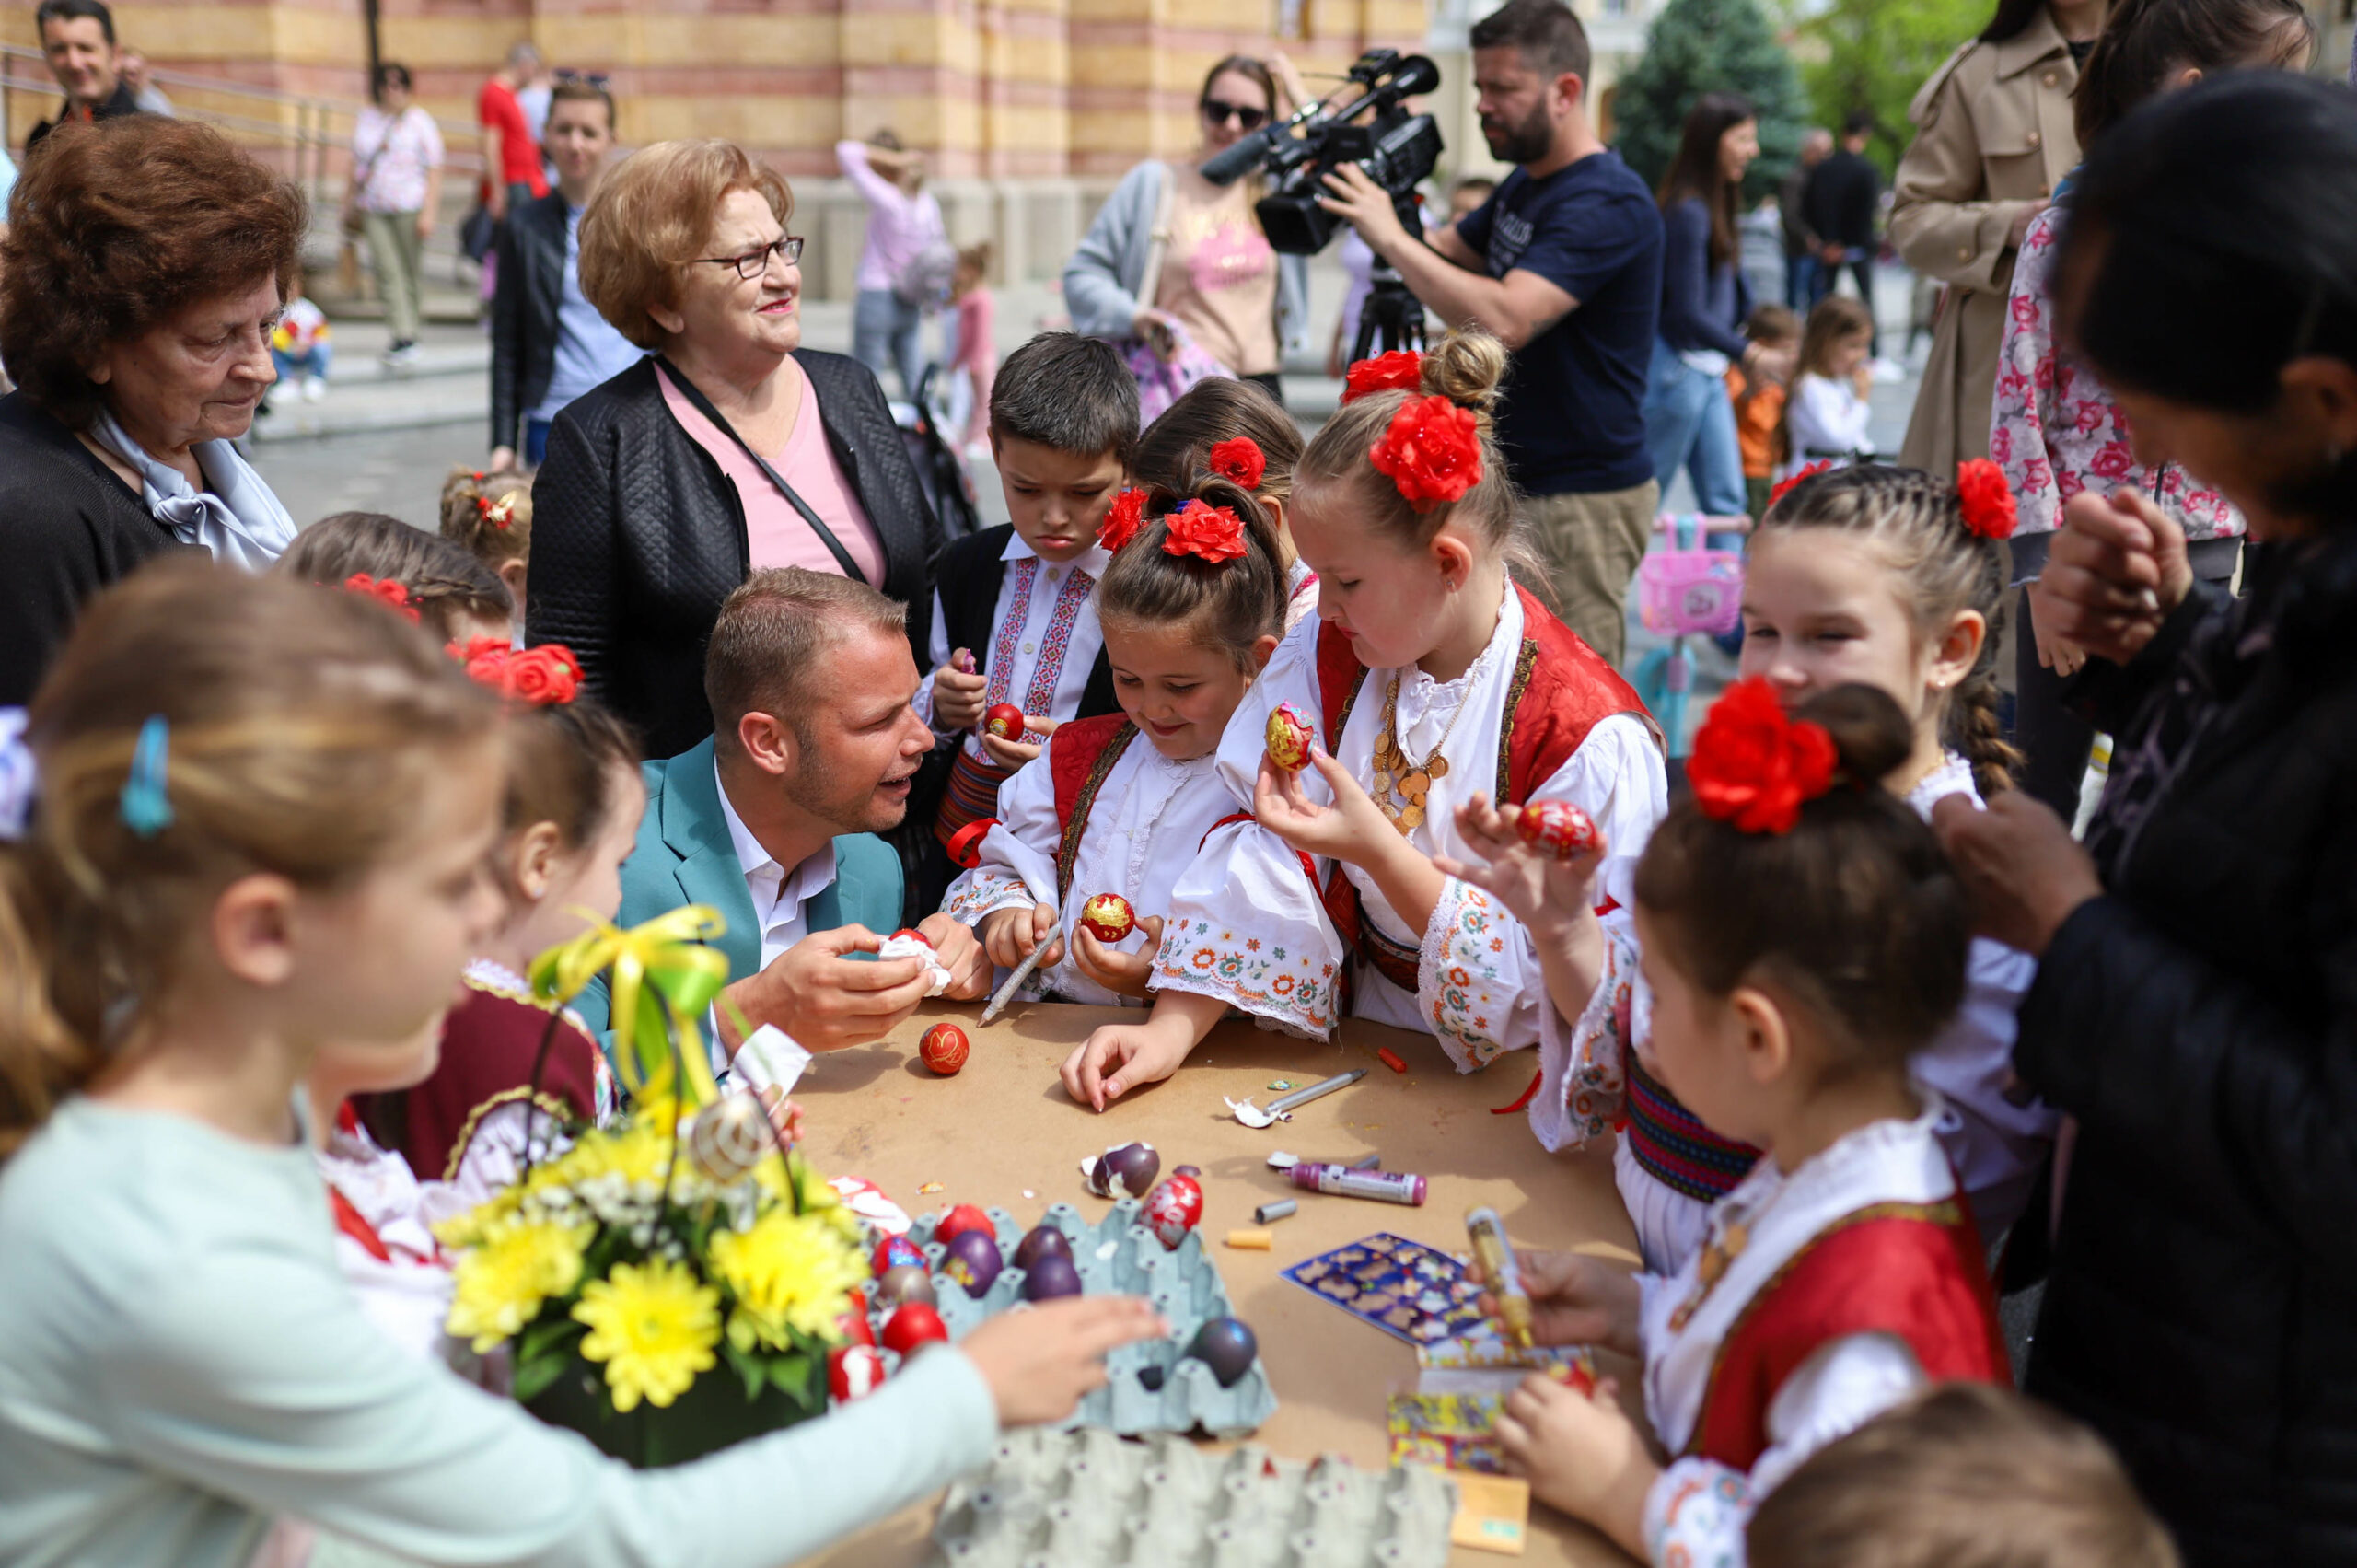 Gradonačelnik prisustvovao vaskršnjim radionicama i pikniku: Čuvajmo tradiciju i običaje, te naše istinske vrijednosti (FOTO)